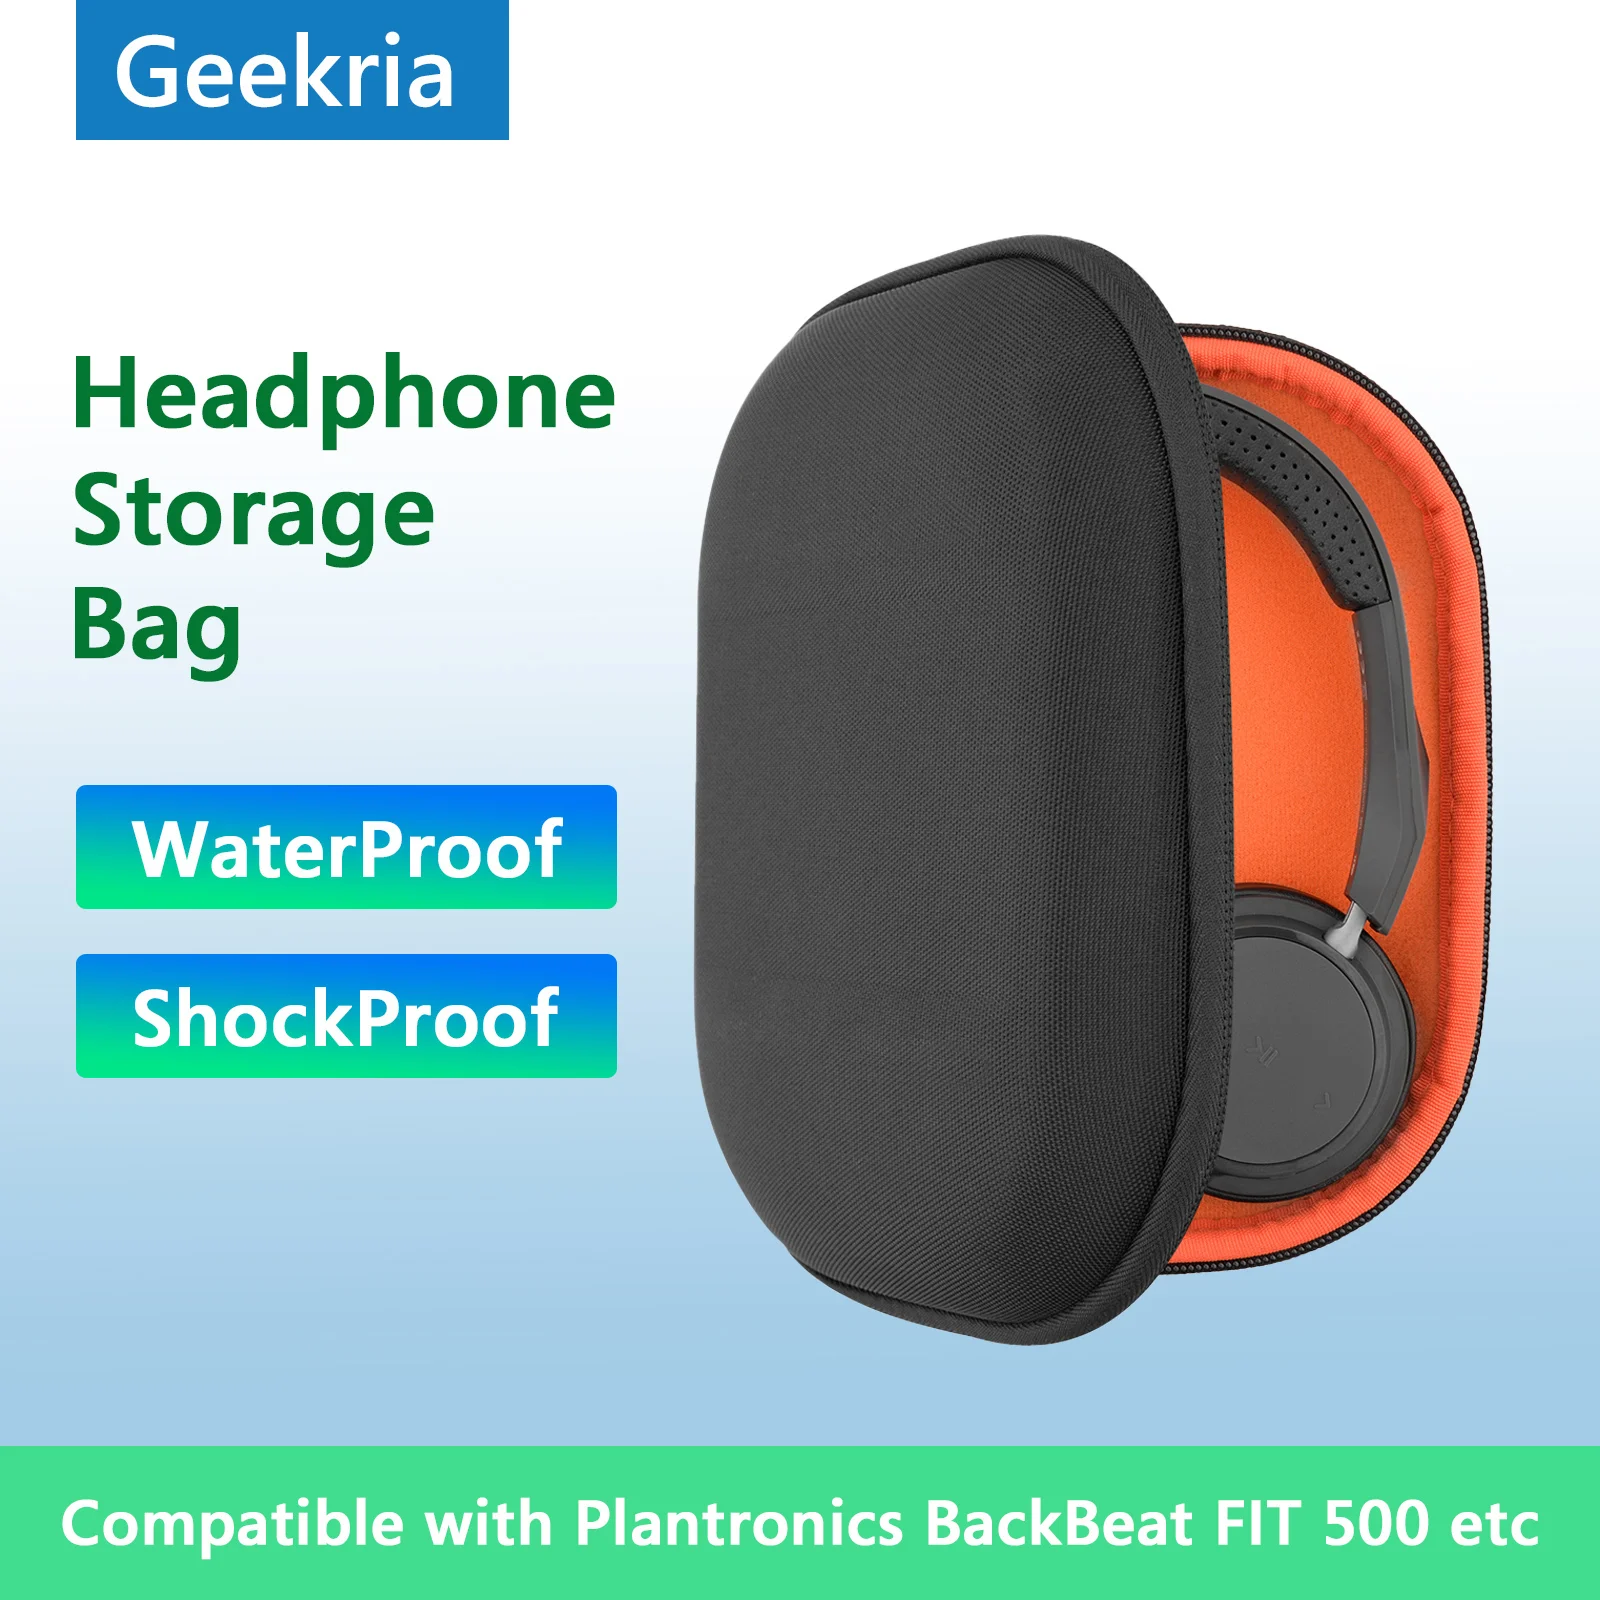 

Чехол для наушников Geekria чехол для Plantronics BackBeat FIT 500, портативный чехол для наушников Bluetooth гарнитуры для хранения аксессуаров